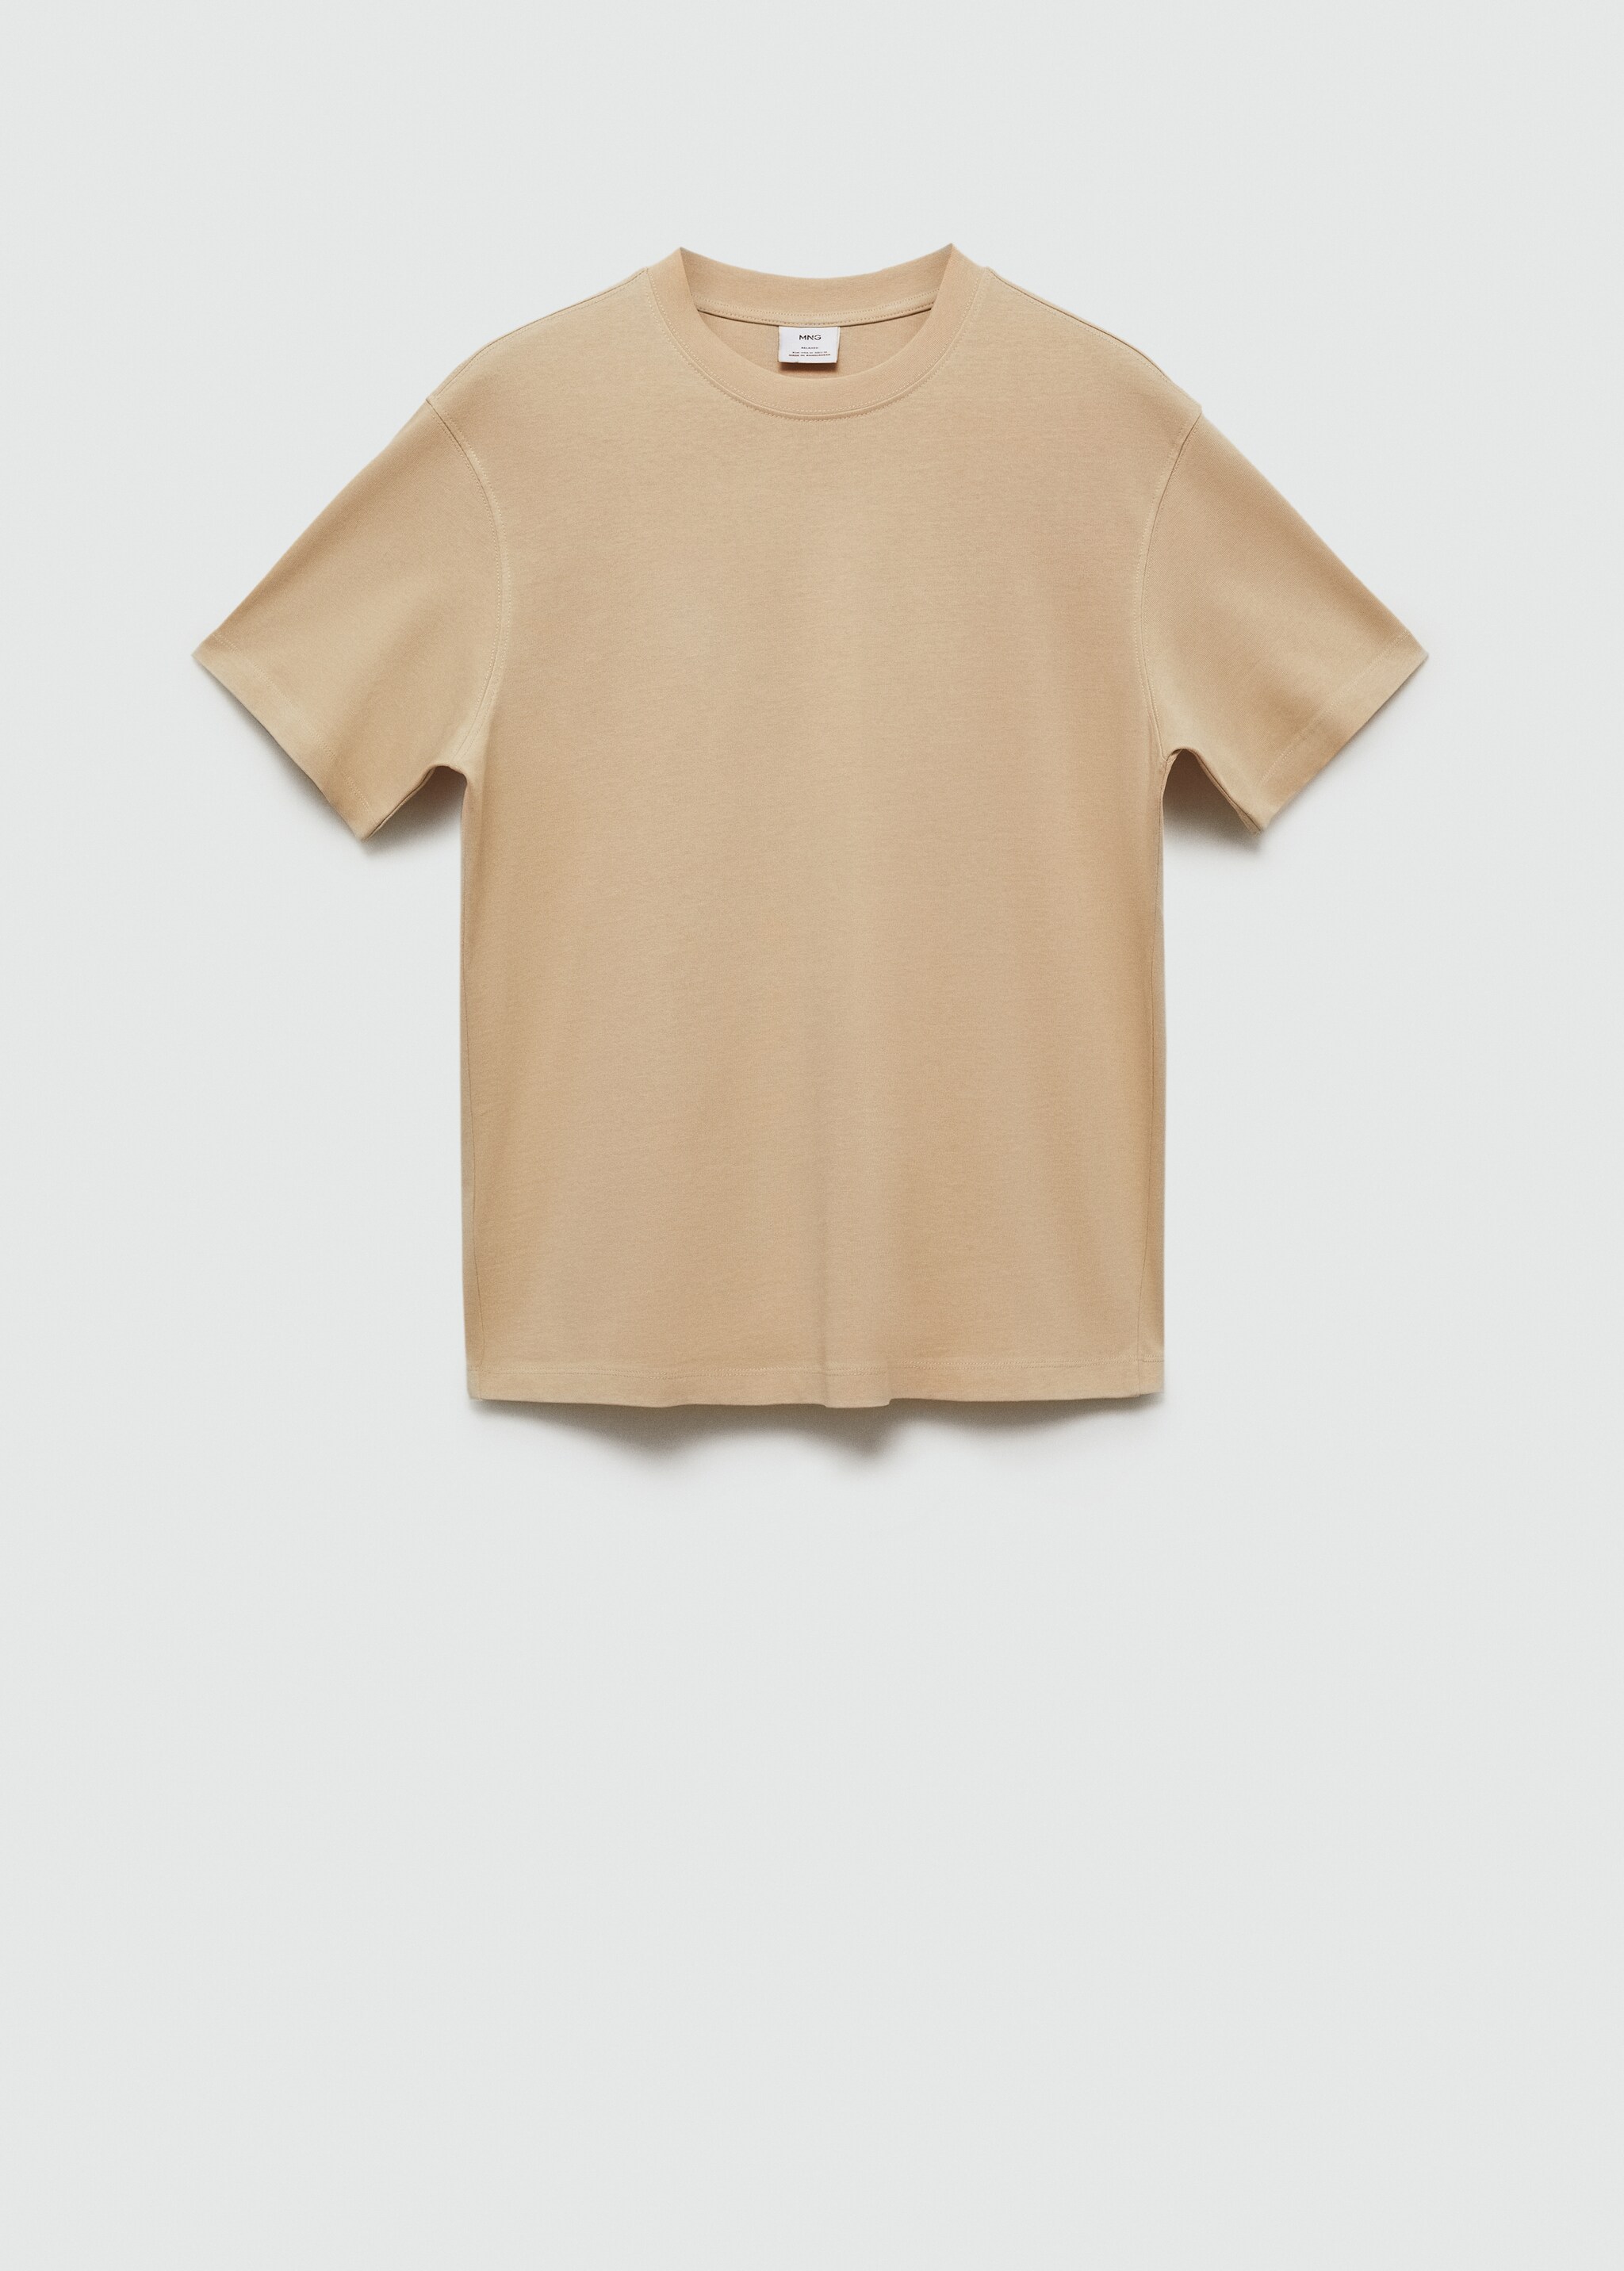 T-shirt básica de 100% algodão relaxed fit - Artigo sem modelo